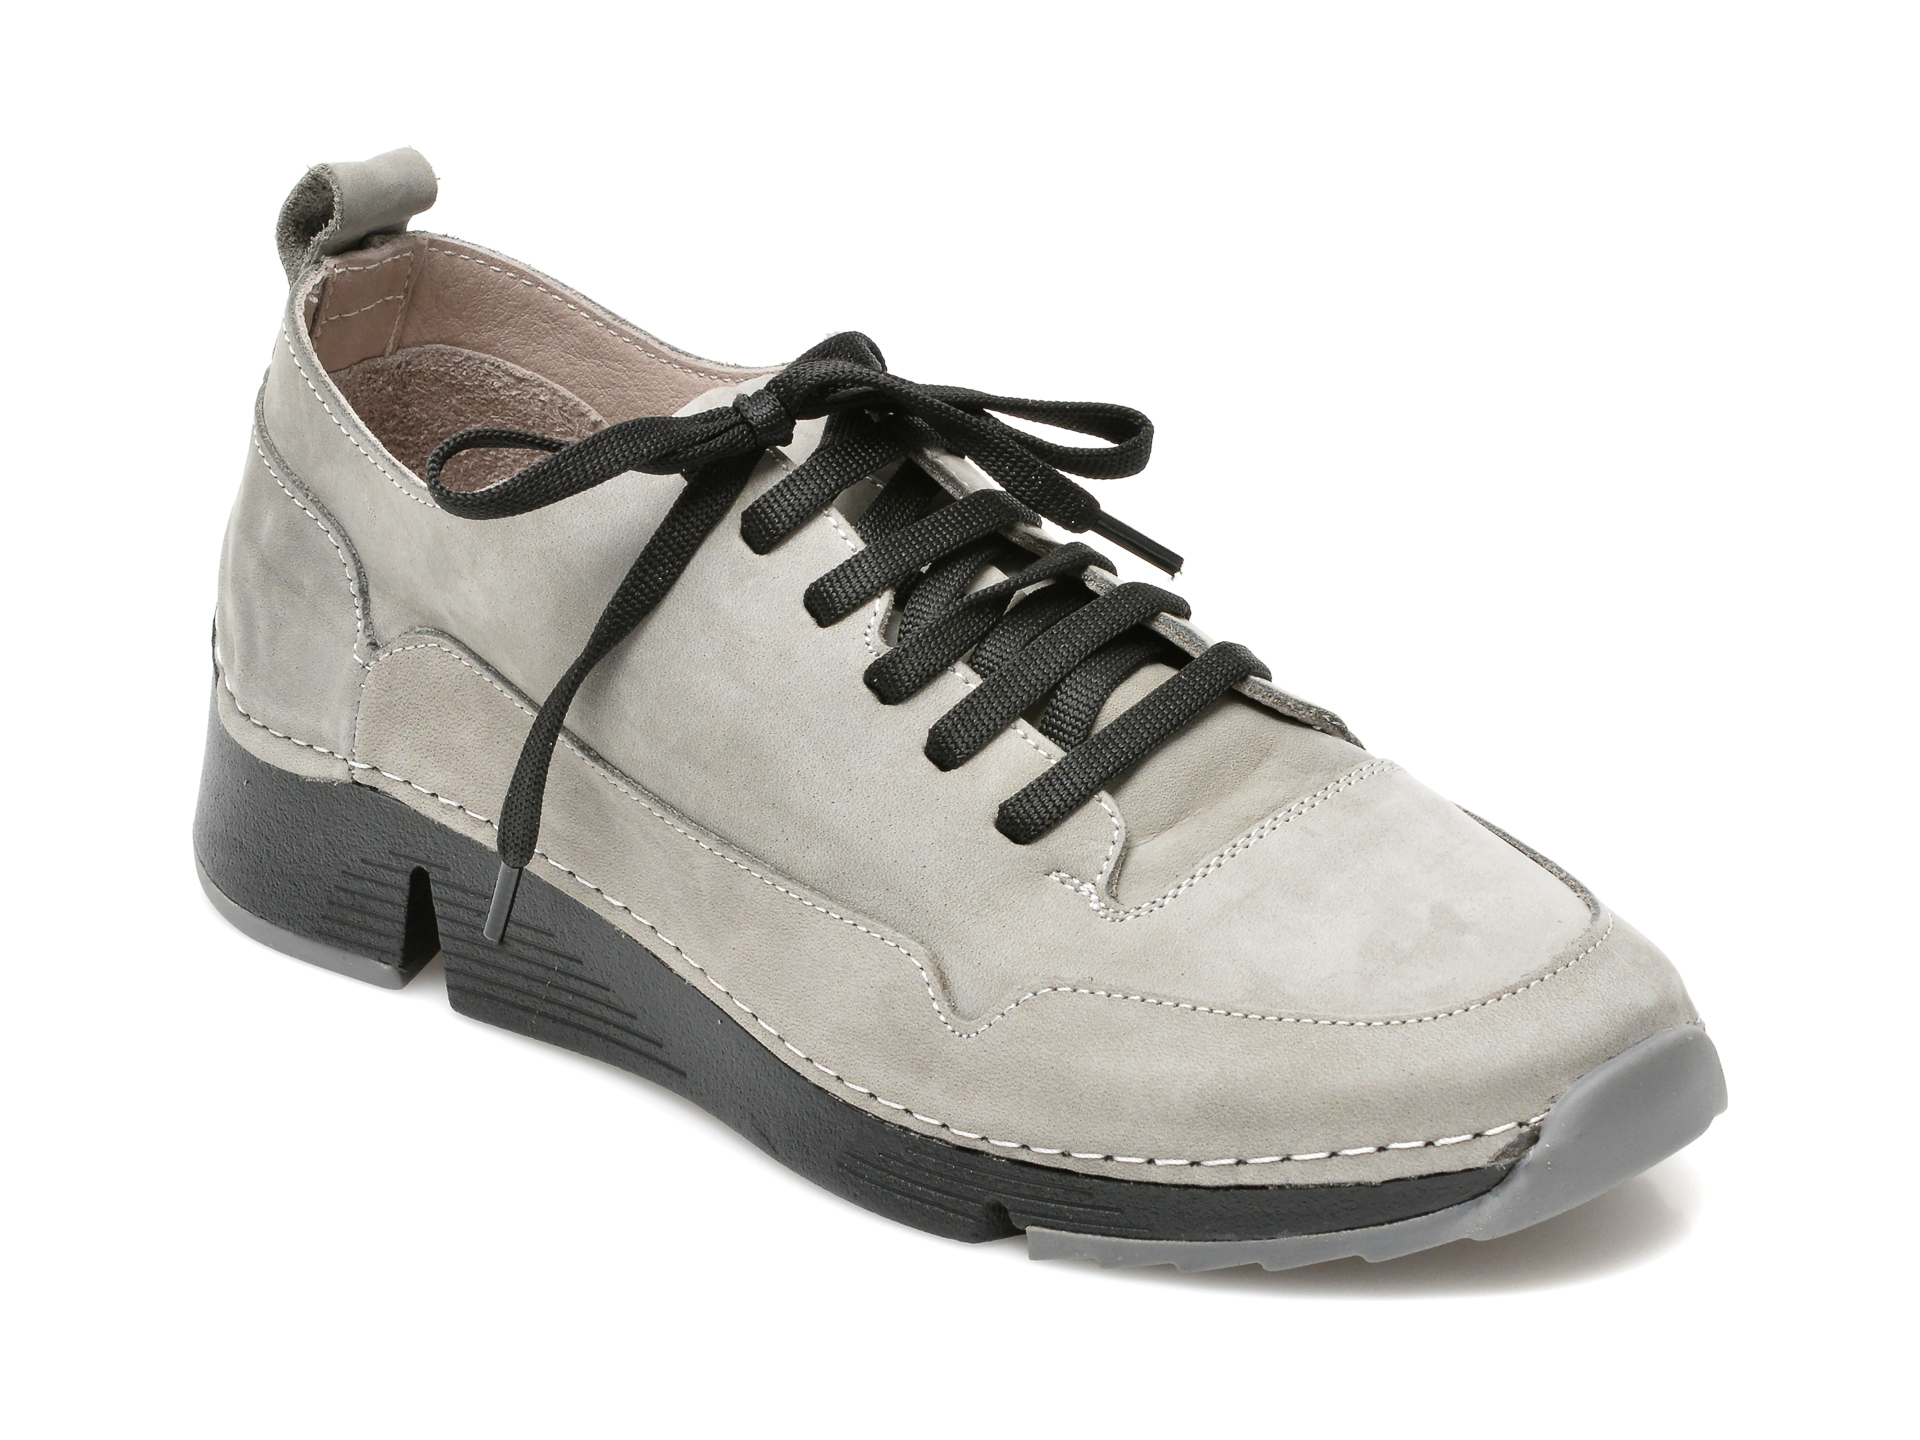 Pantofi FLAVIA PASSINI gri, 5964, din piele intoarsa Flavia Passini